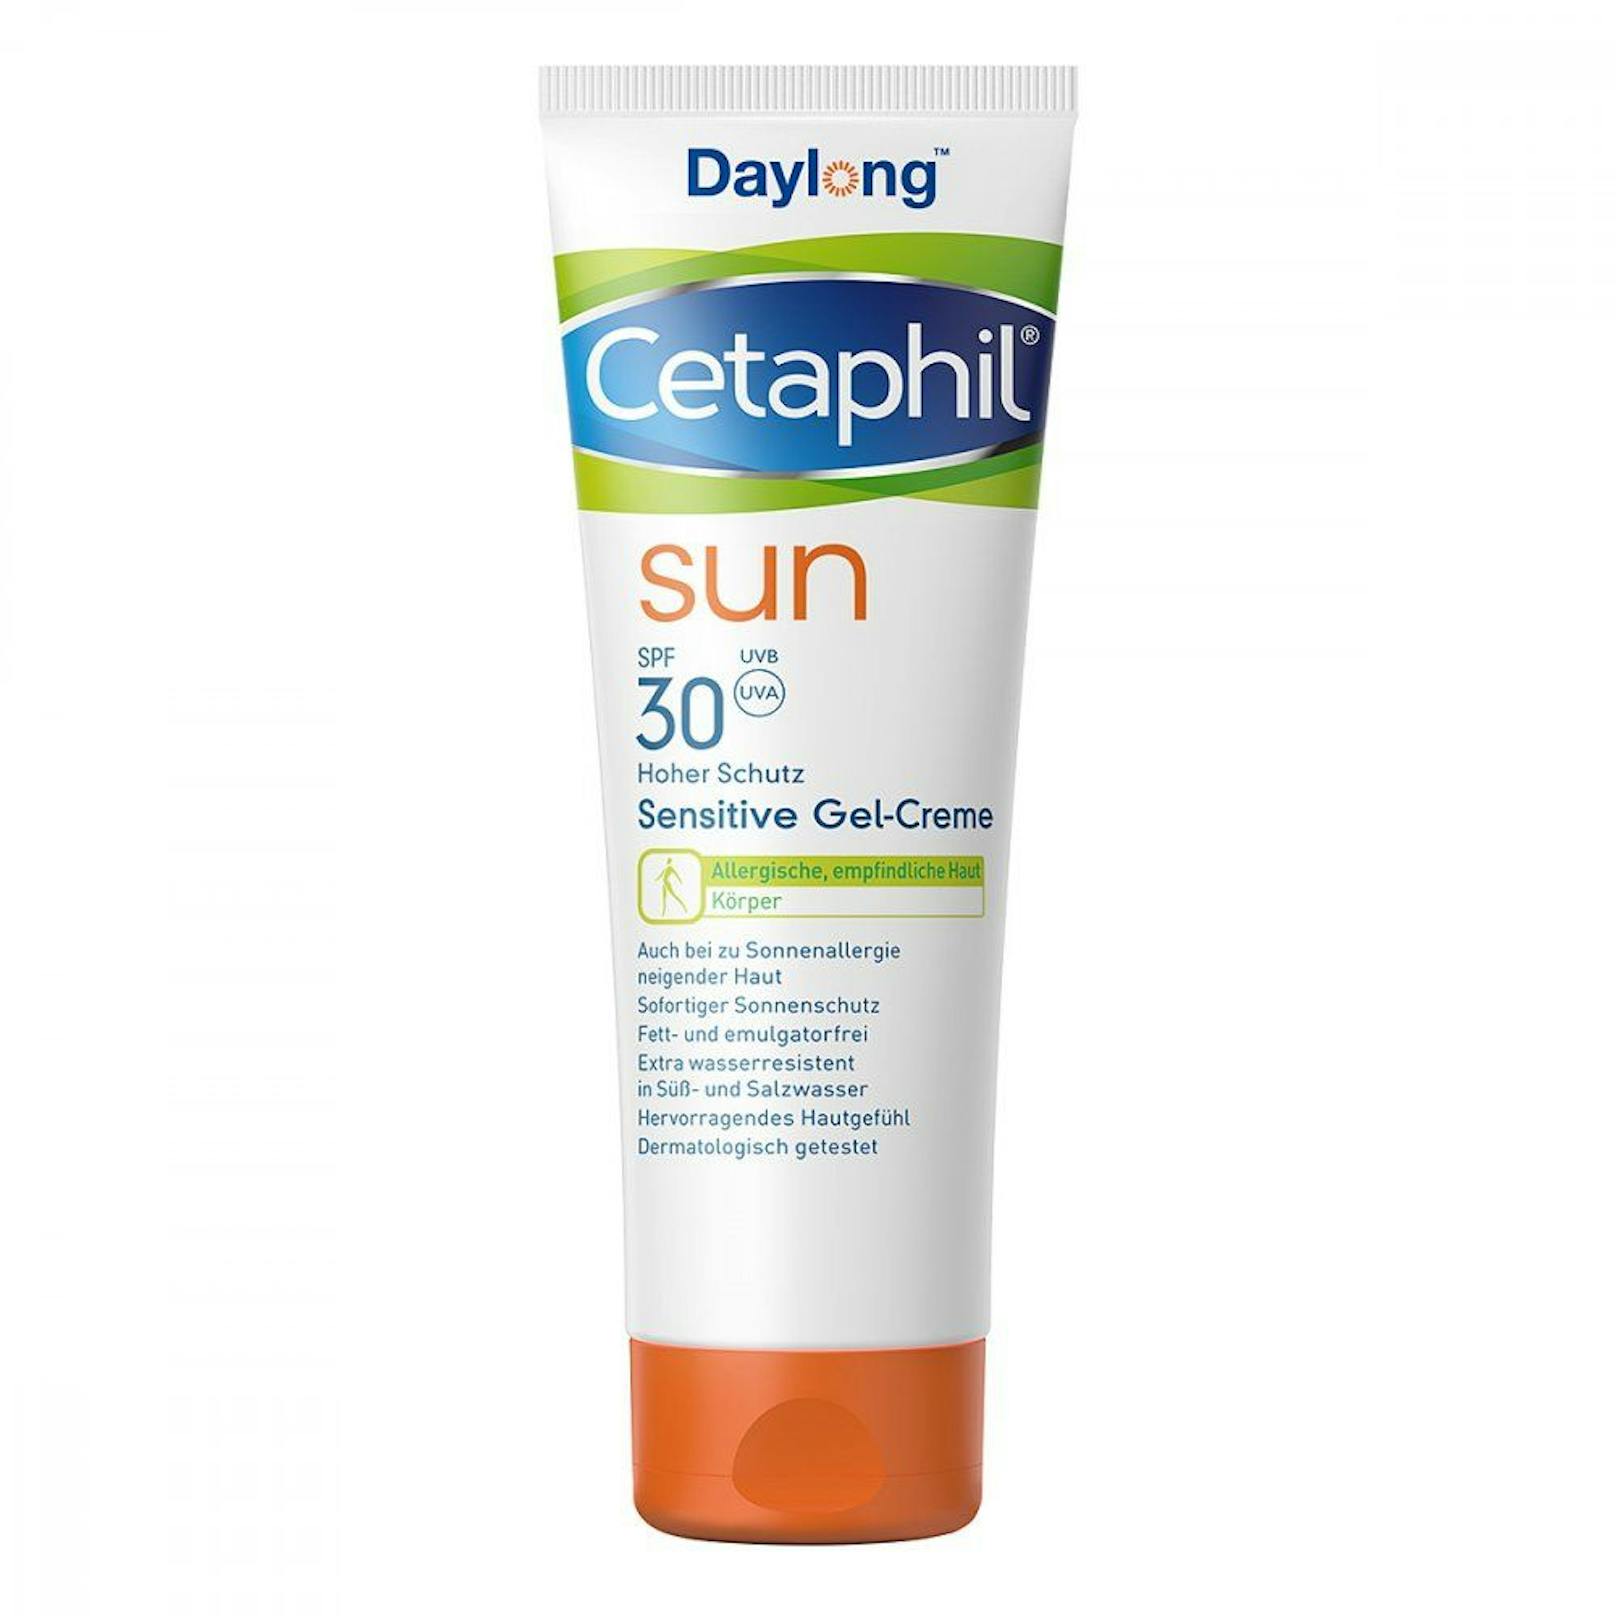 Cetaphil Sun sensitiv Gel-Creme, 200ml um 31,50 Euro.